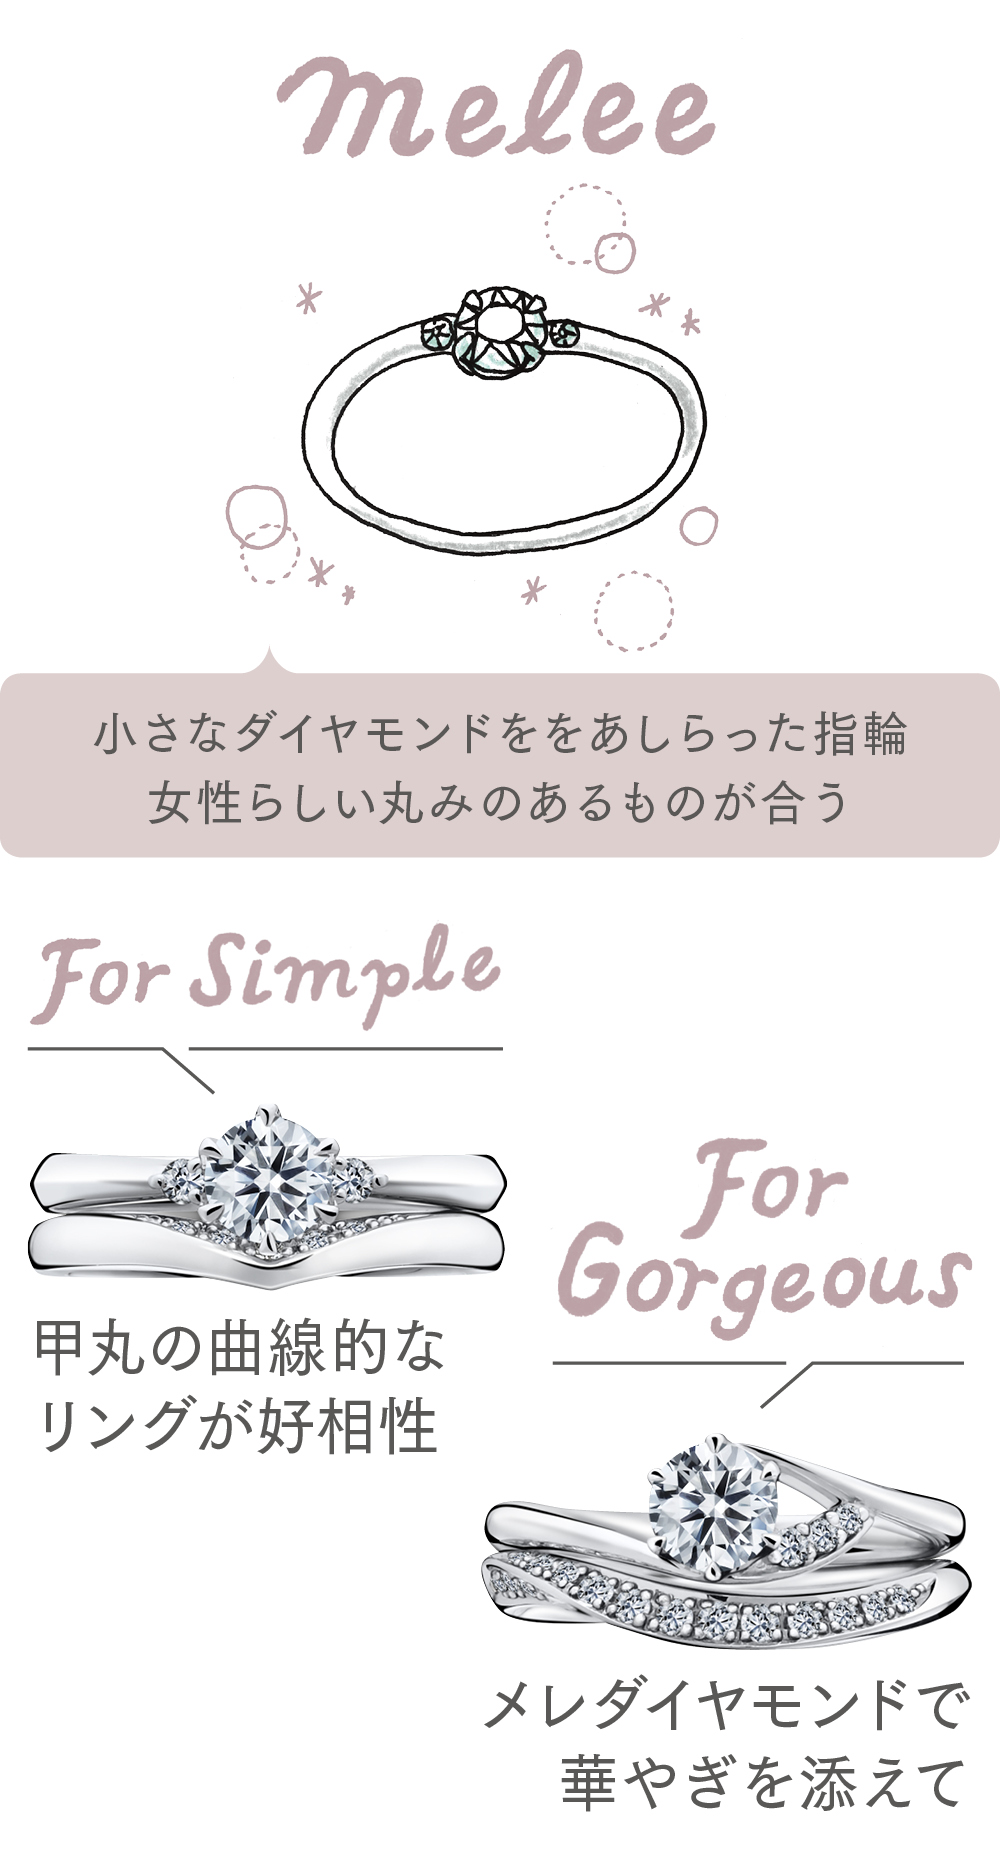 婚約指輪のデザインが「メレダイヤ付き」の場合